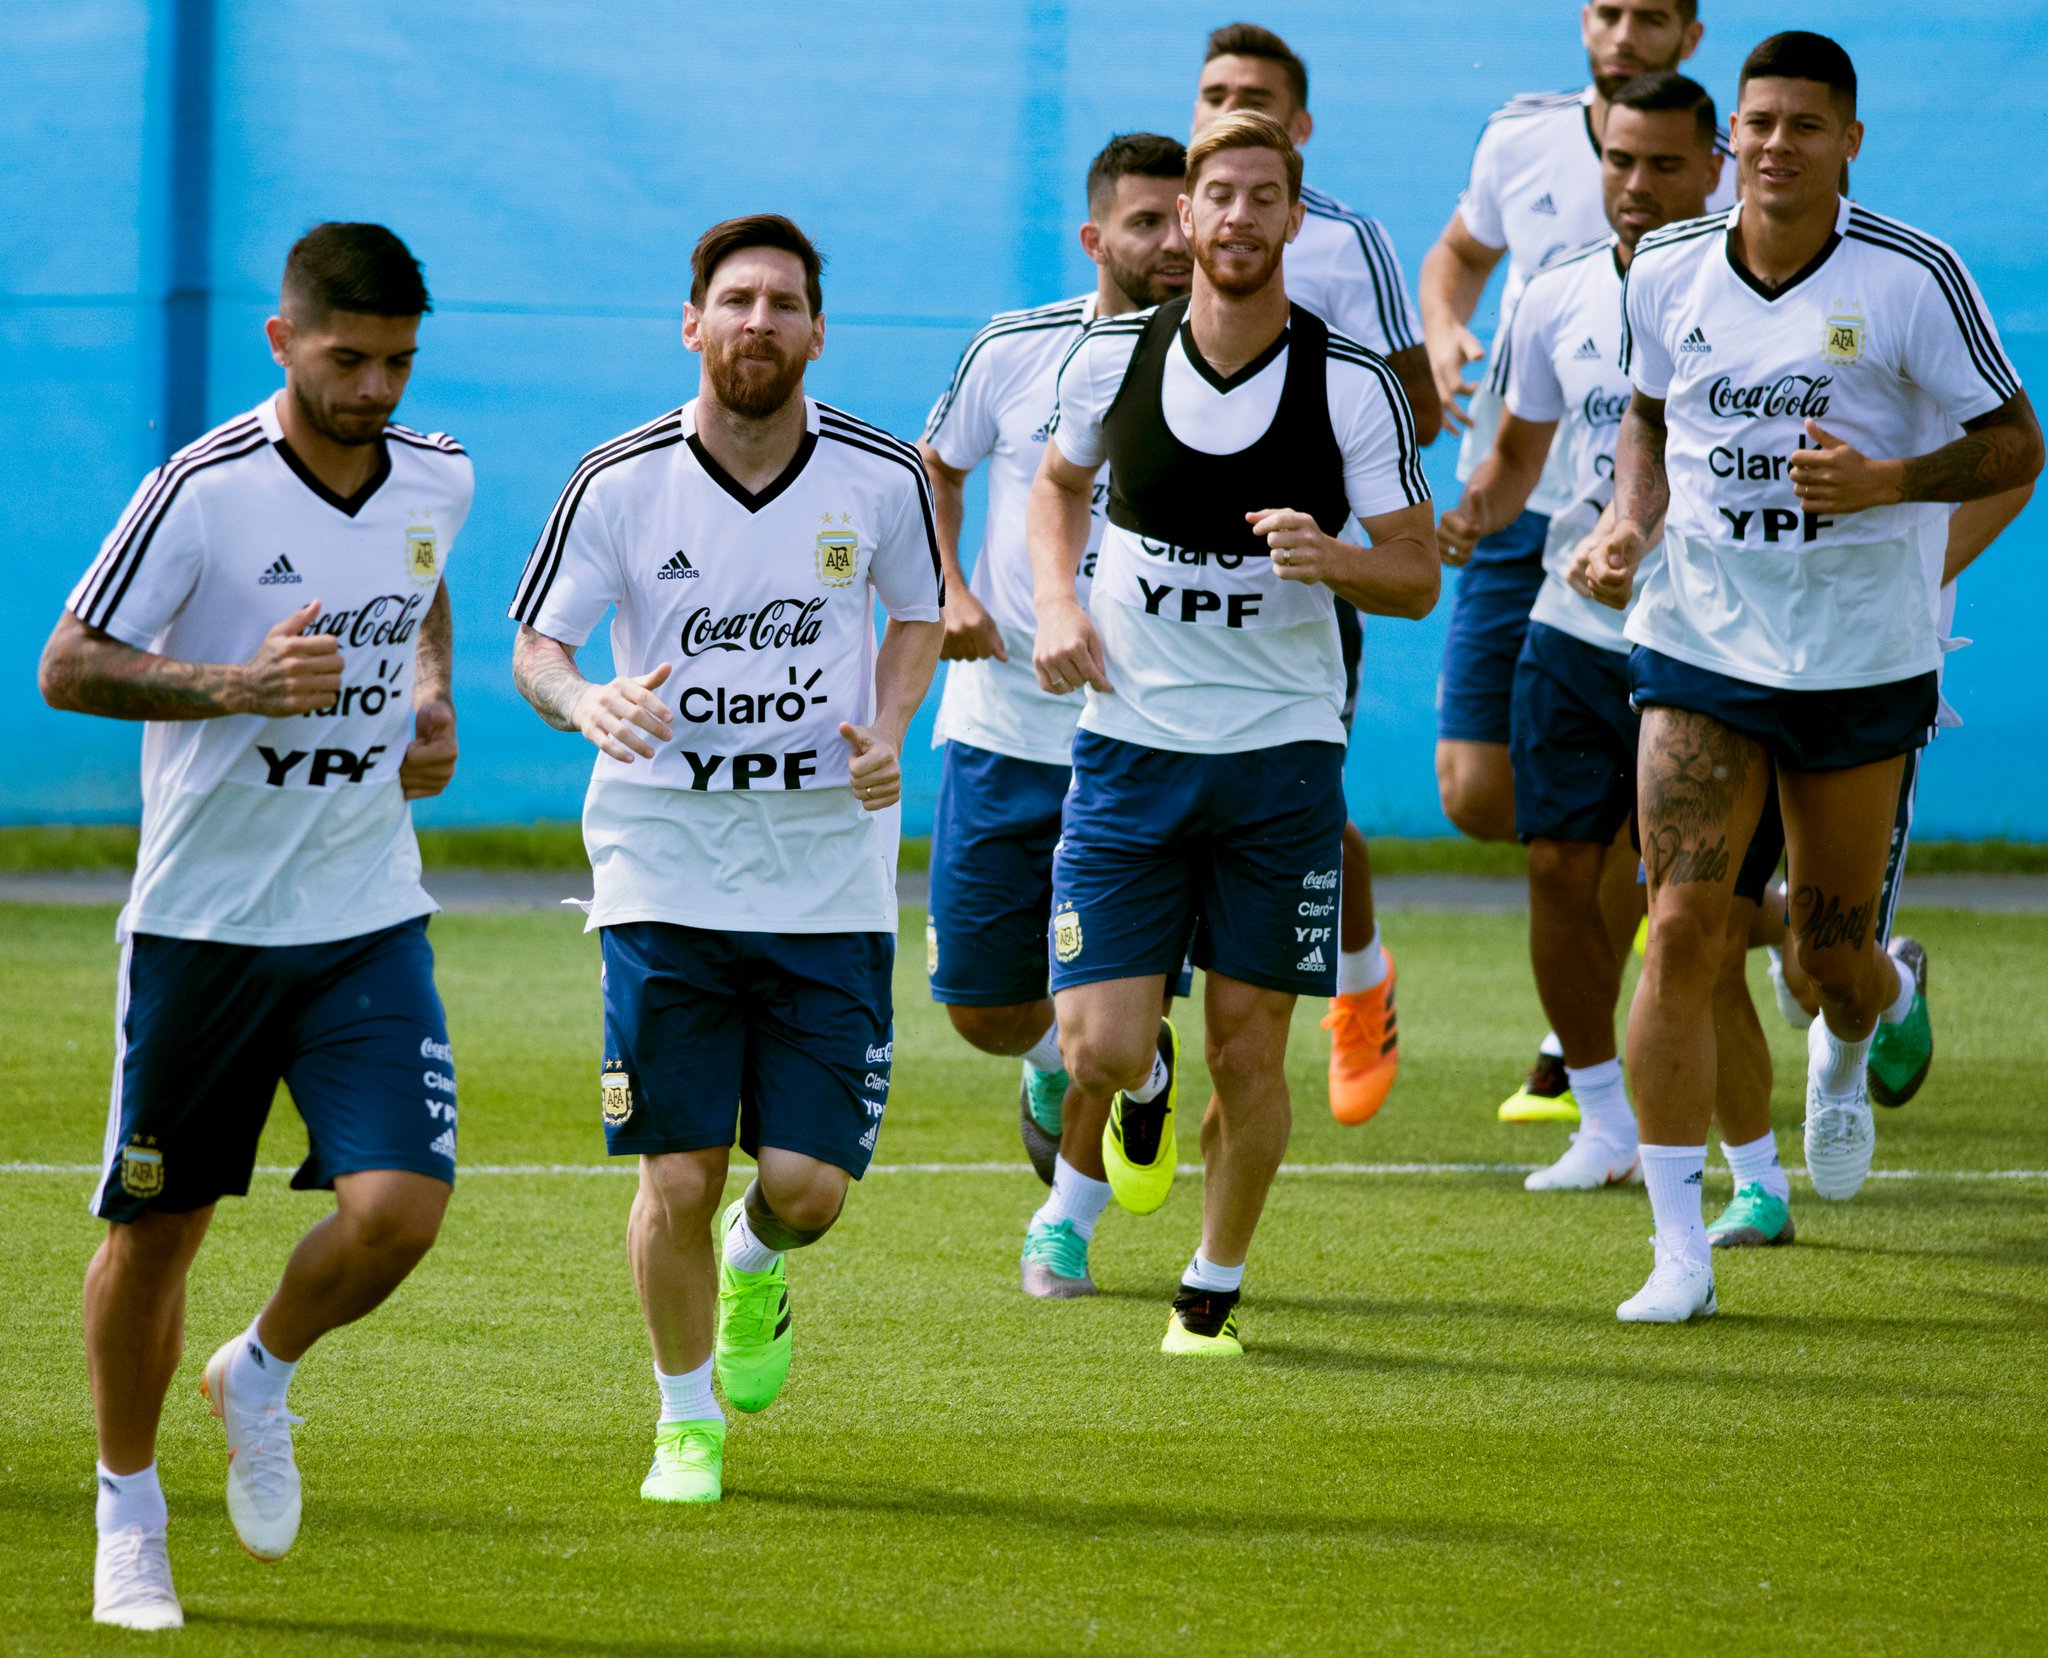 Após desencantar, Messi revela 'fita da sorte' dada por